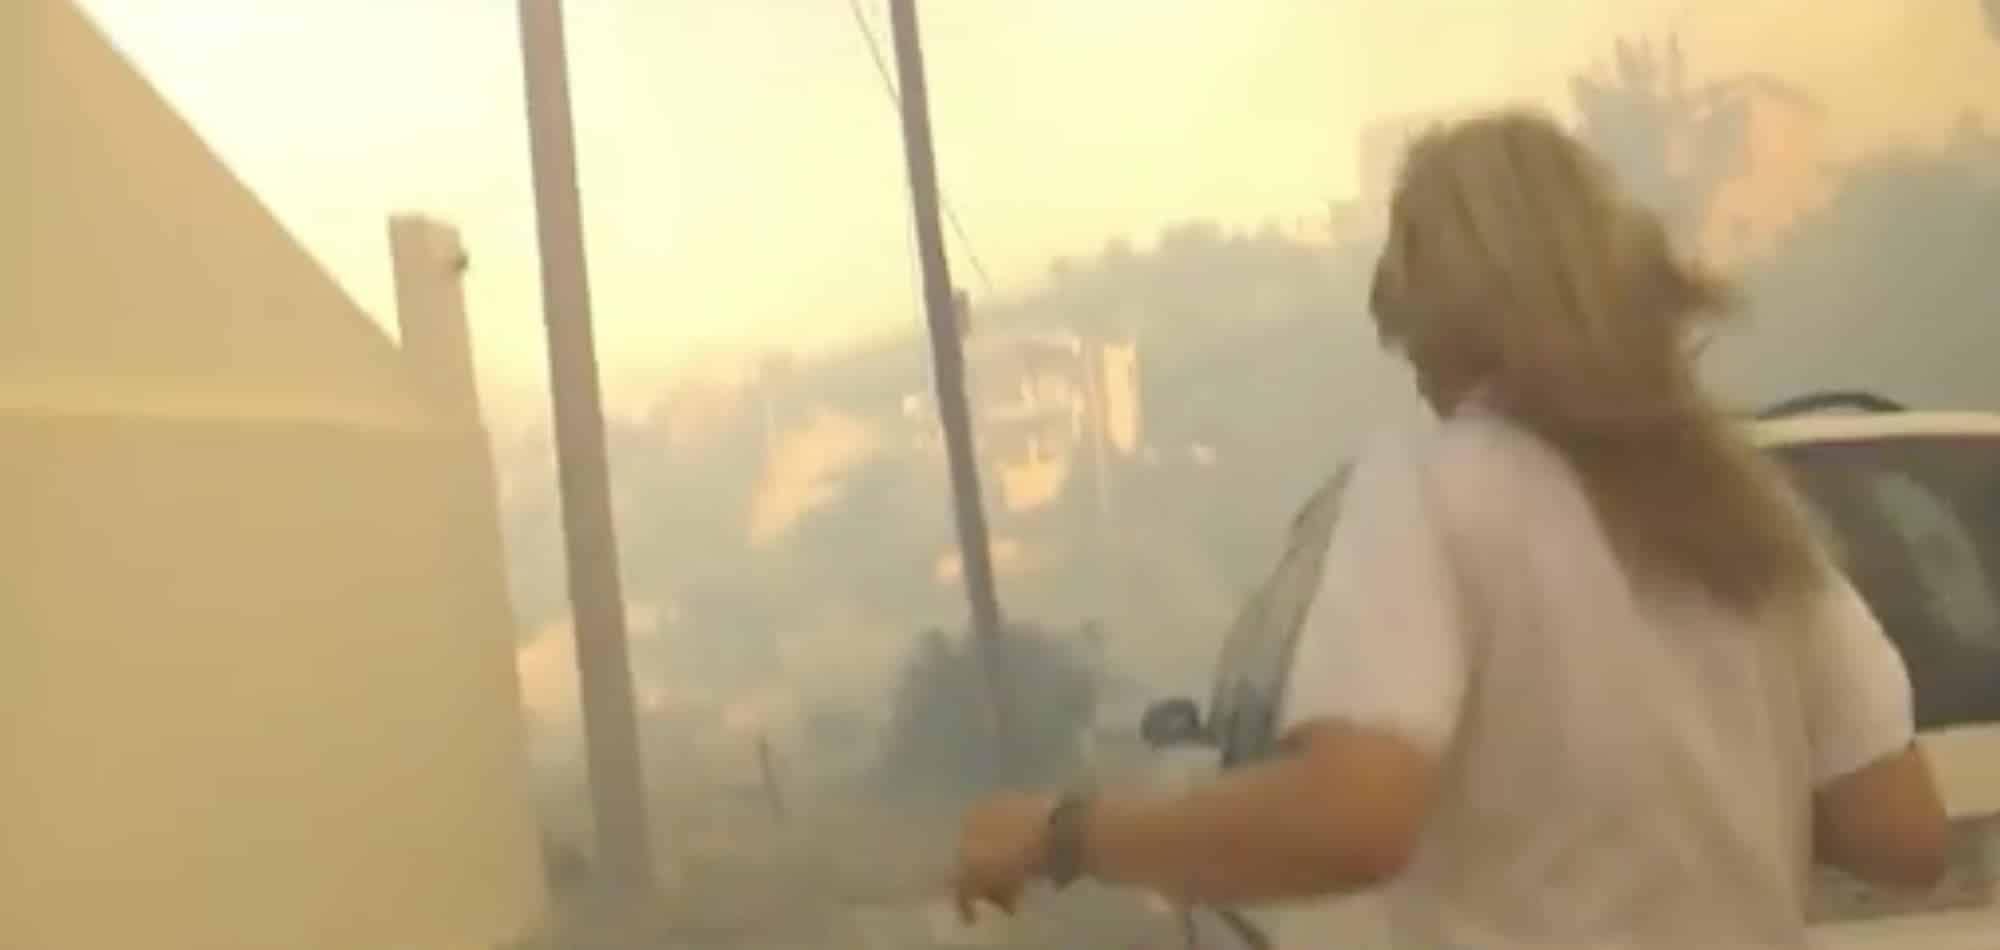 Δημοσιογράφος τρέχει να σωθεί στη φωτιά στην Πεντέλη